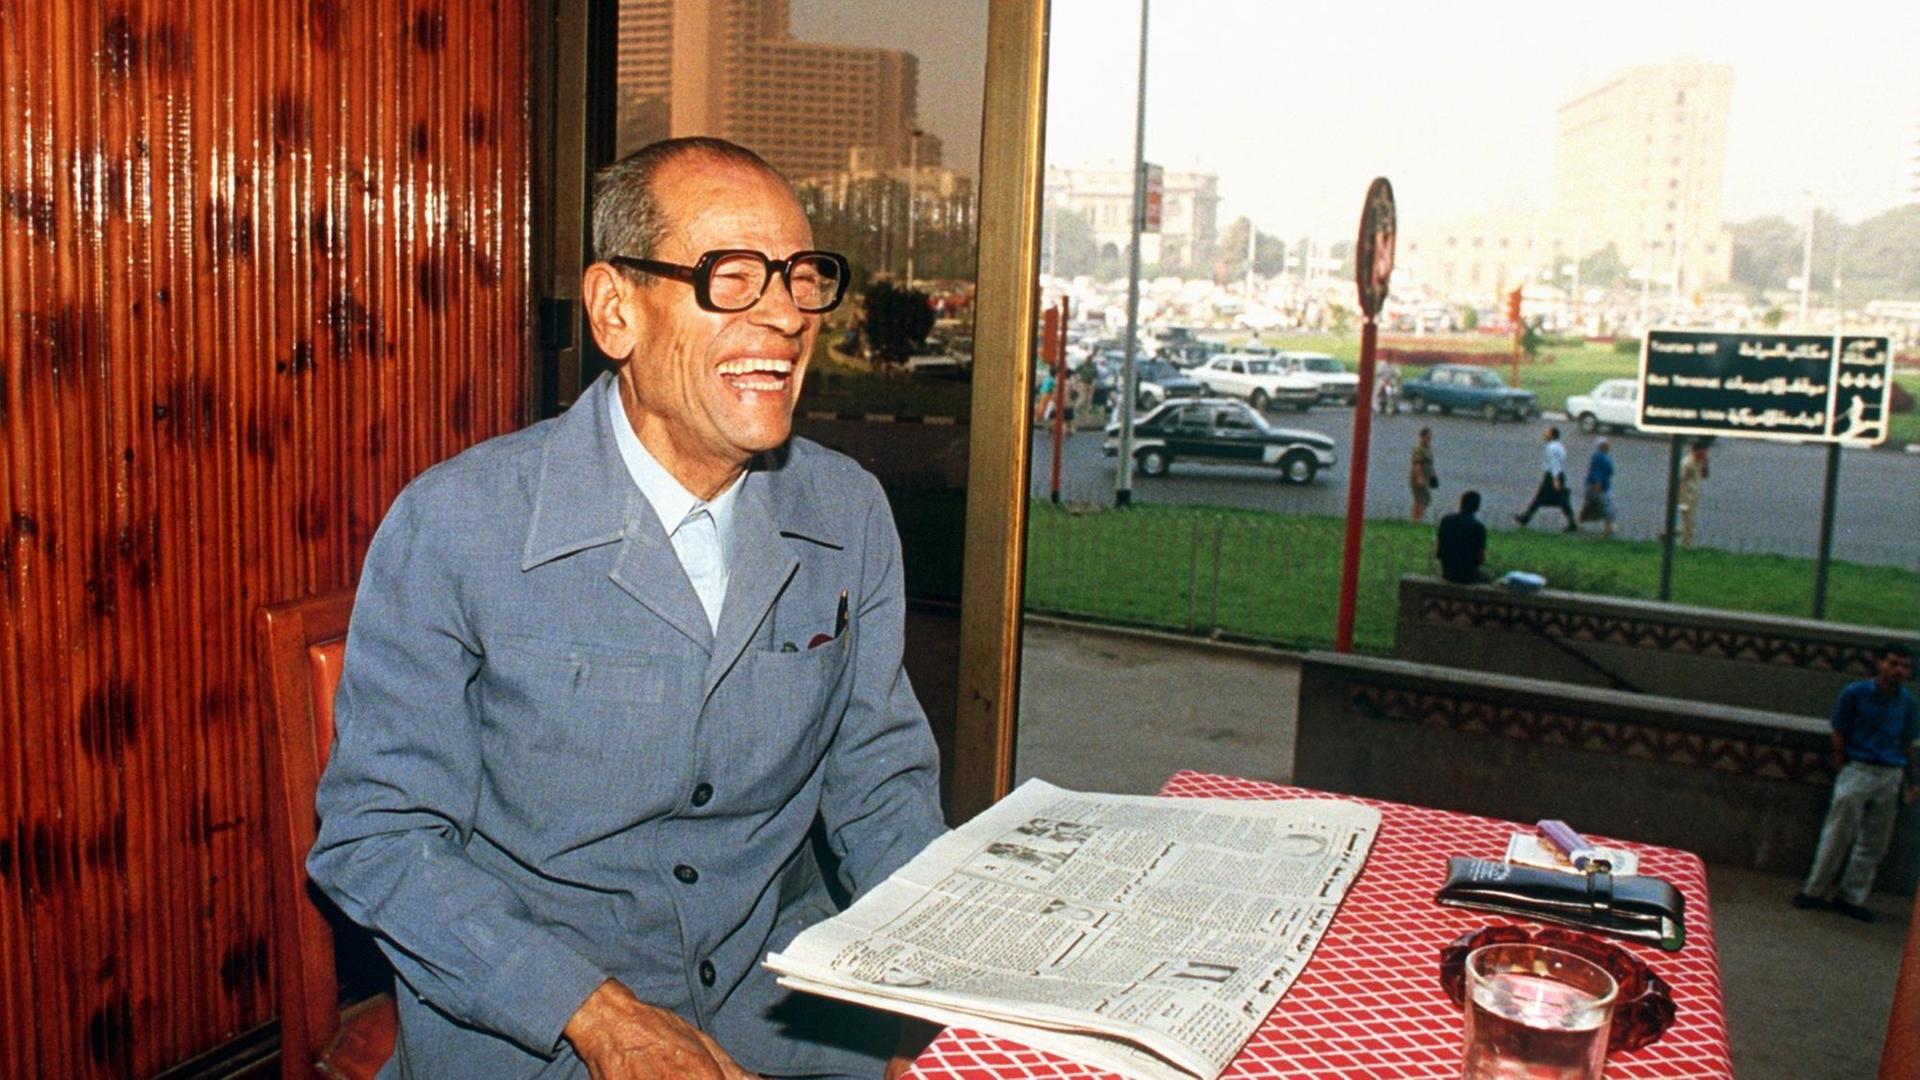 Der Nobelpreisträger für Literatur, der Ägypter Nagib Machfus, am 20. Oktober 1988 in seinem Lieblingscafé "Ali Baba" am Tahrir-Platz in Kairo.